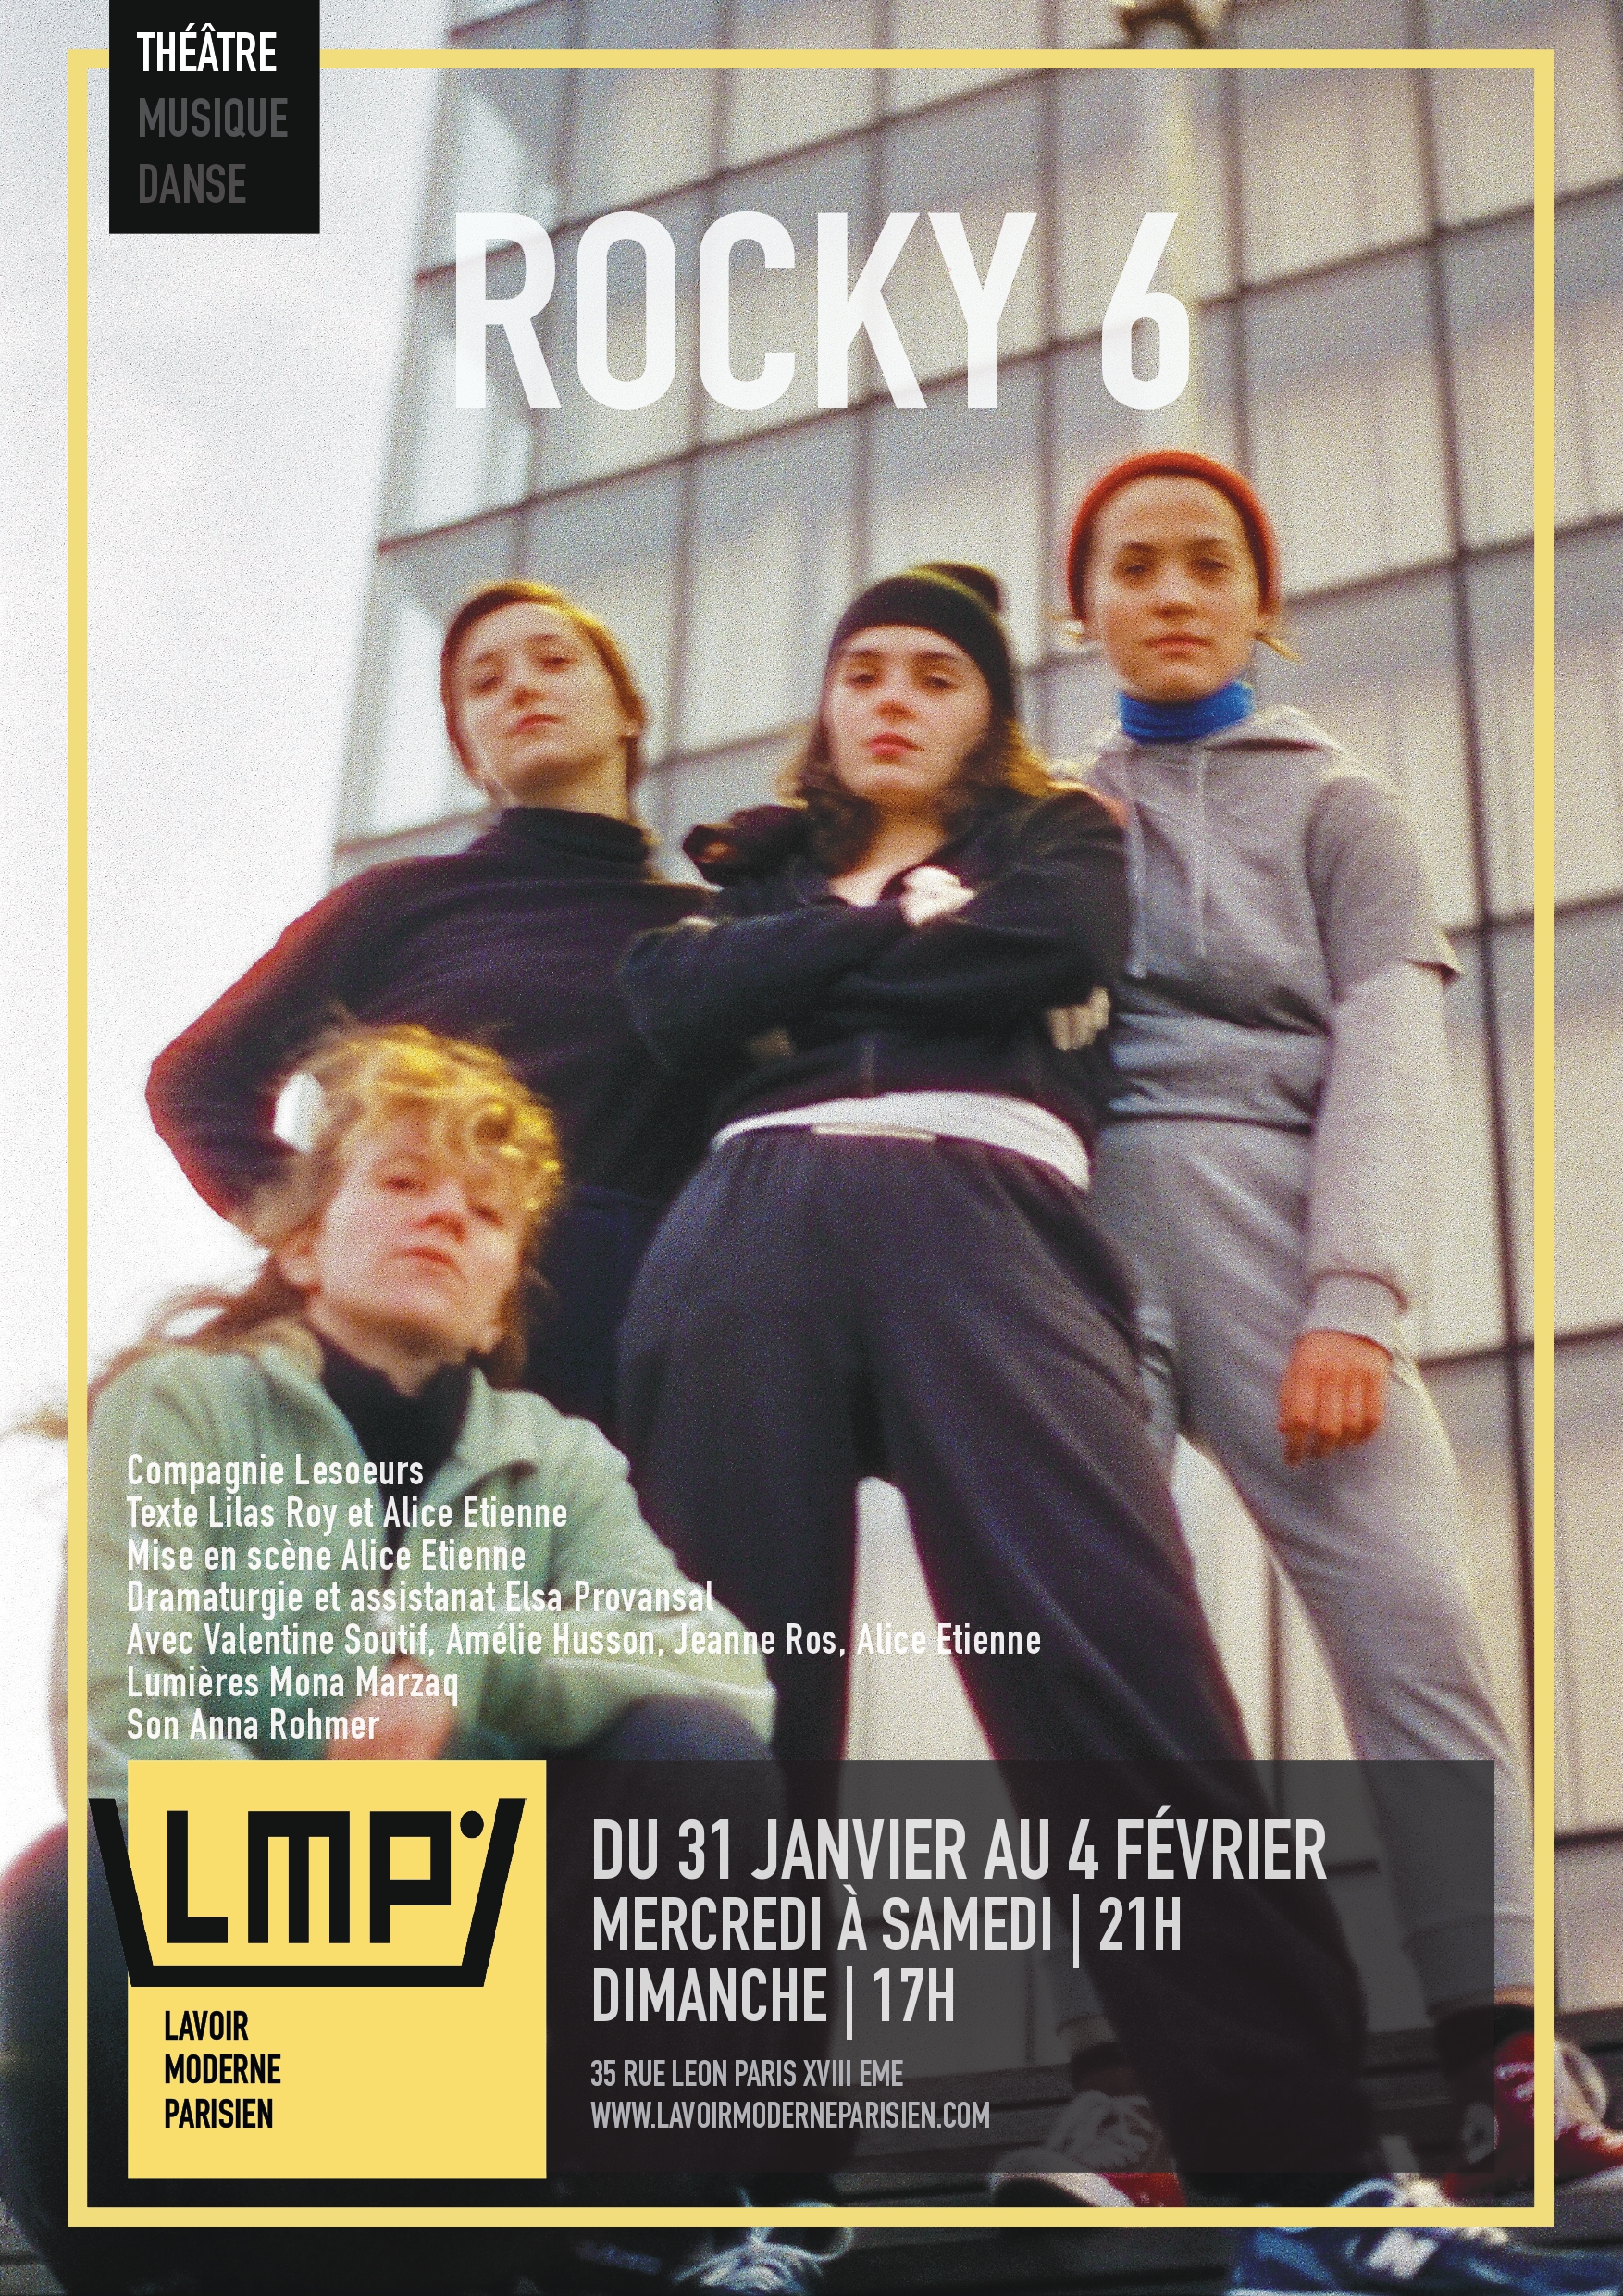 Rocky 6 sera joué du 31 janvier au 4 février 2024 au Lavoir Moderne Parisien // Source : Madeleine Delaunay